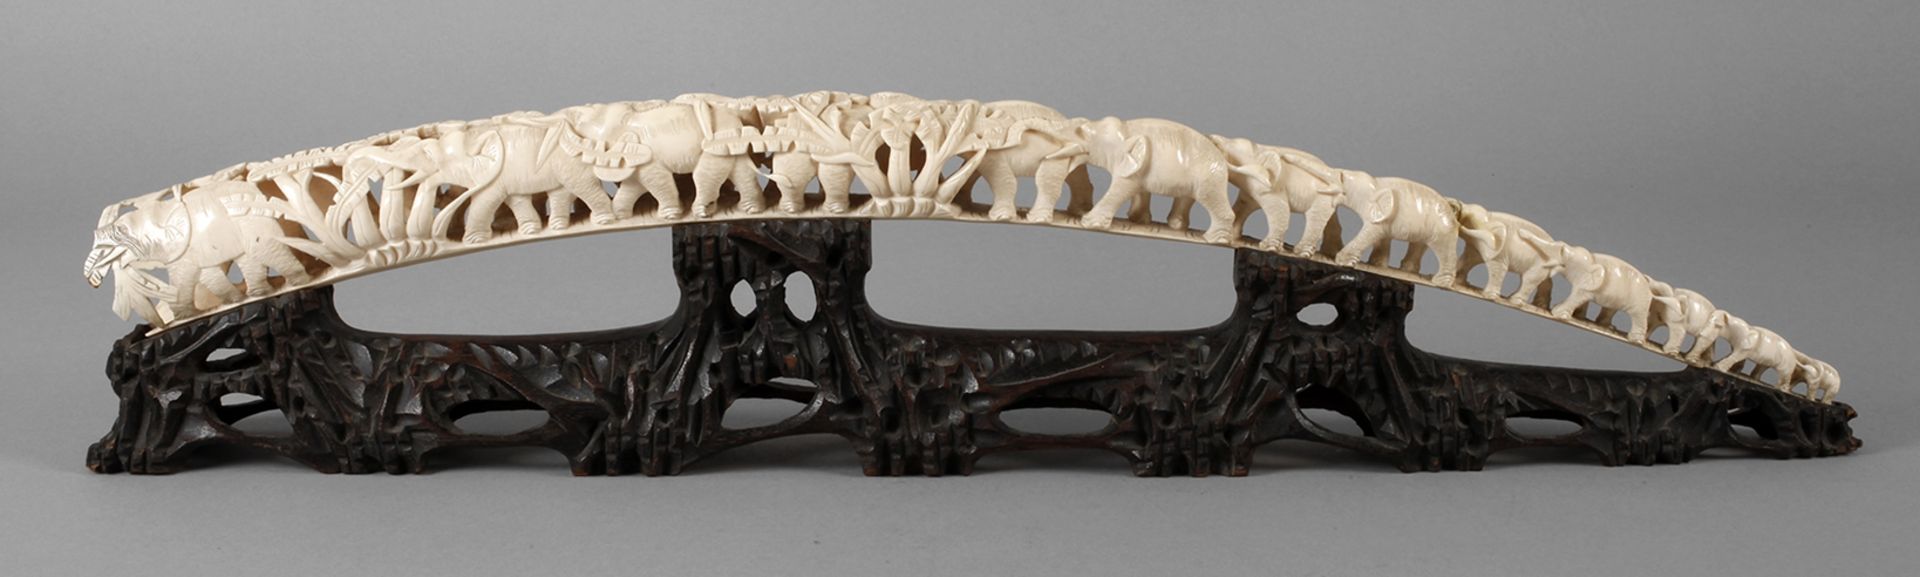 Beschnitzter Stoßzahn um 1920, ungemarkt, aus dem Zahn eines Waldelefanten gearbeitetes Kunstobjekt,